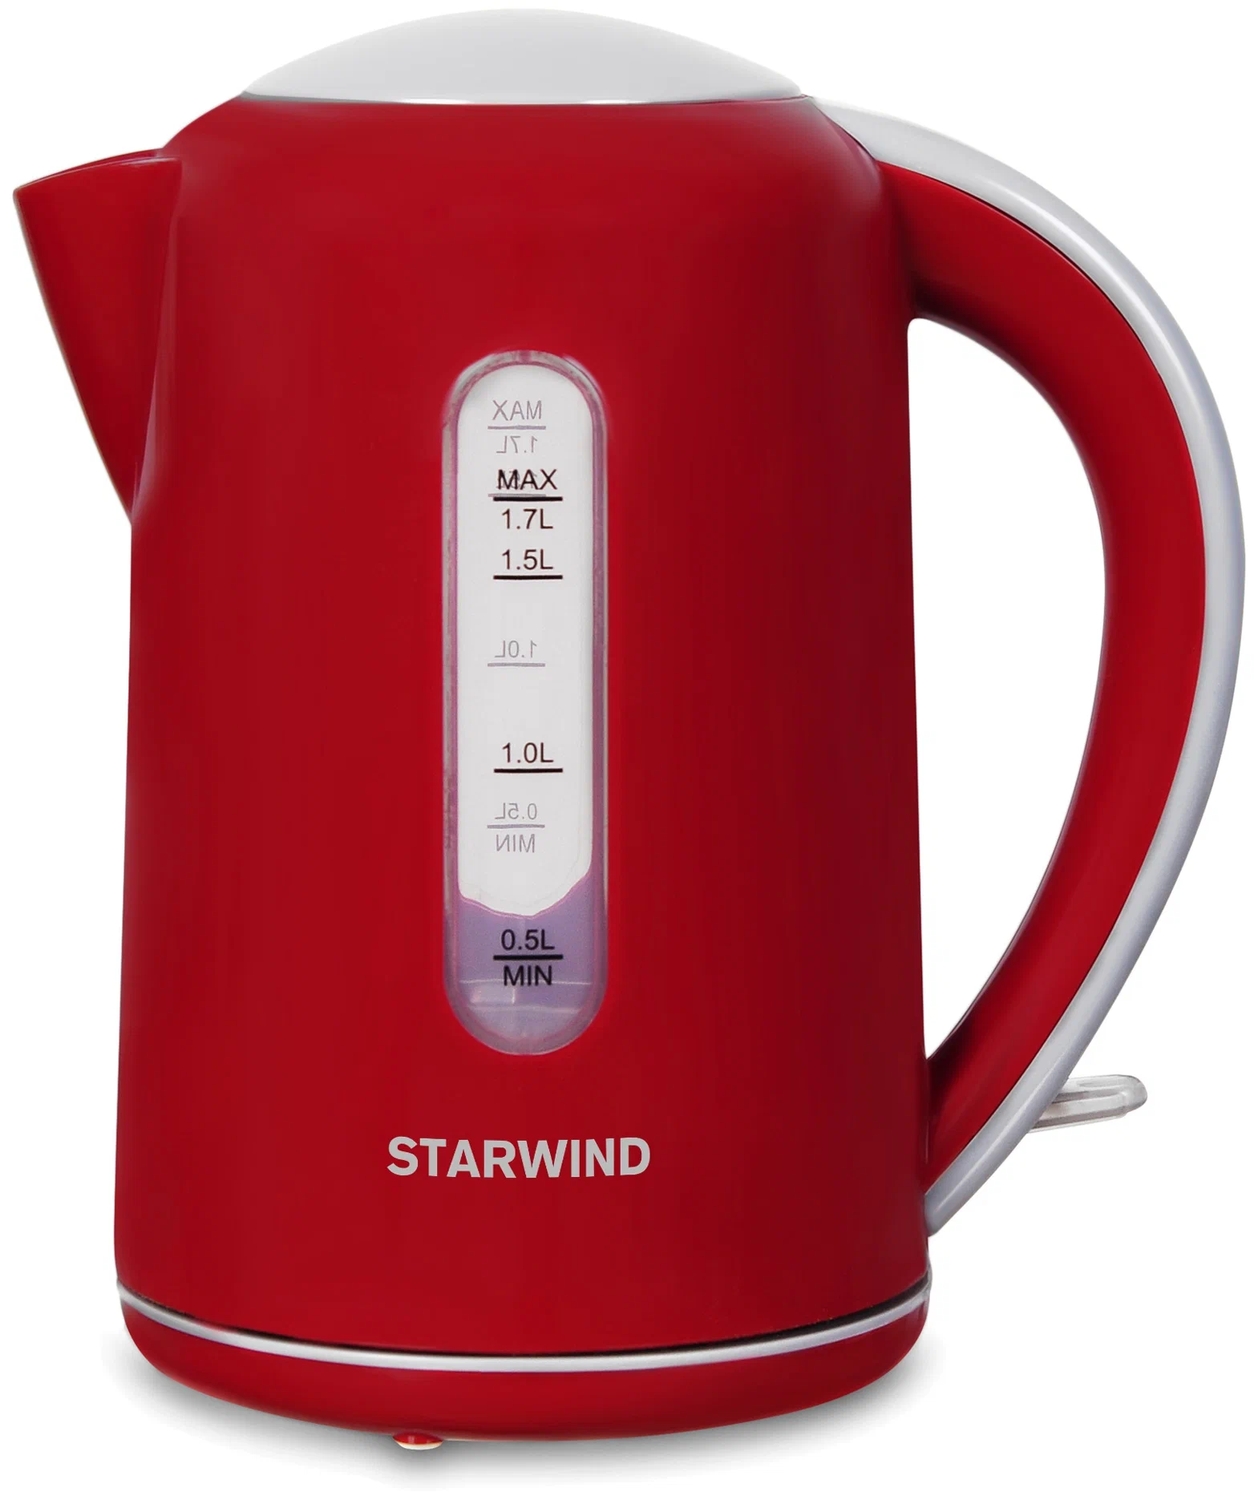 Чайник электрический Starwind SKG1021 1.7л. 2200Вт, красный и серый чайник электрический starwind skg4031 1 7л 2200вт черный корпус стекло